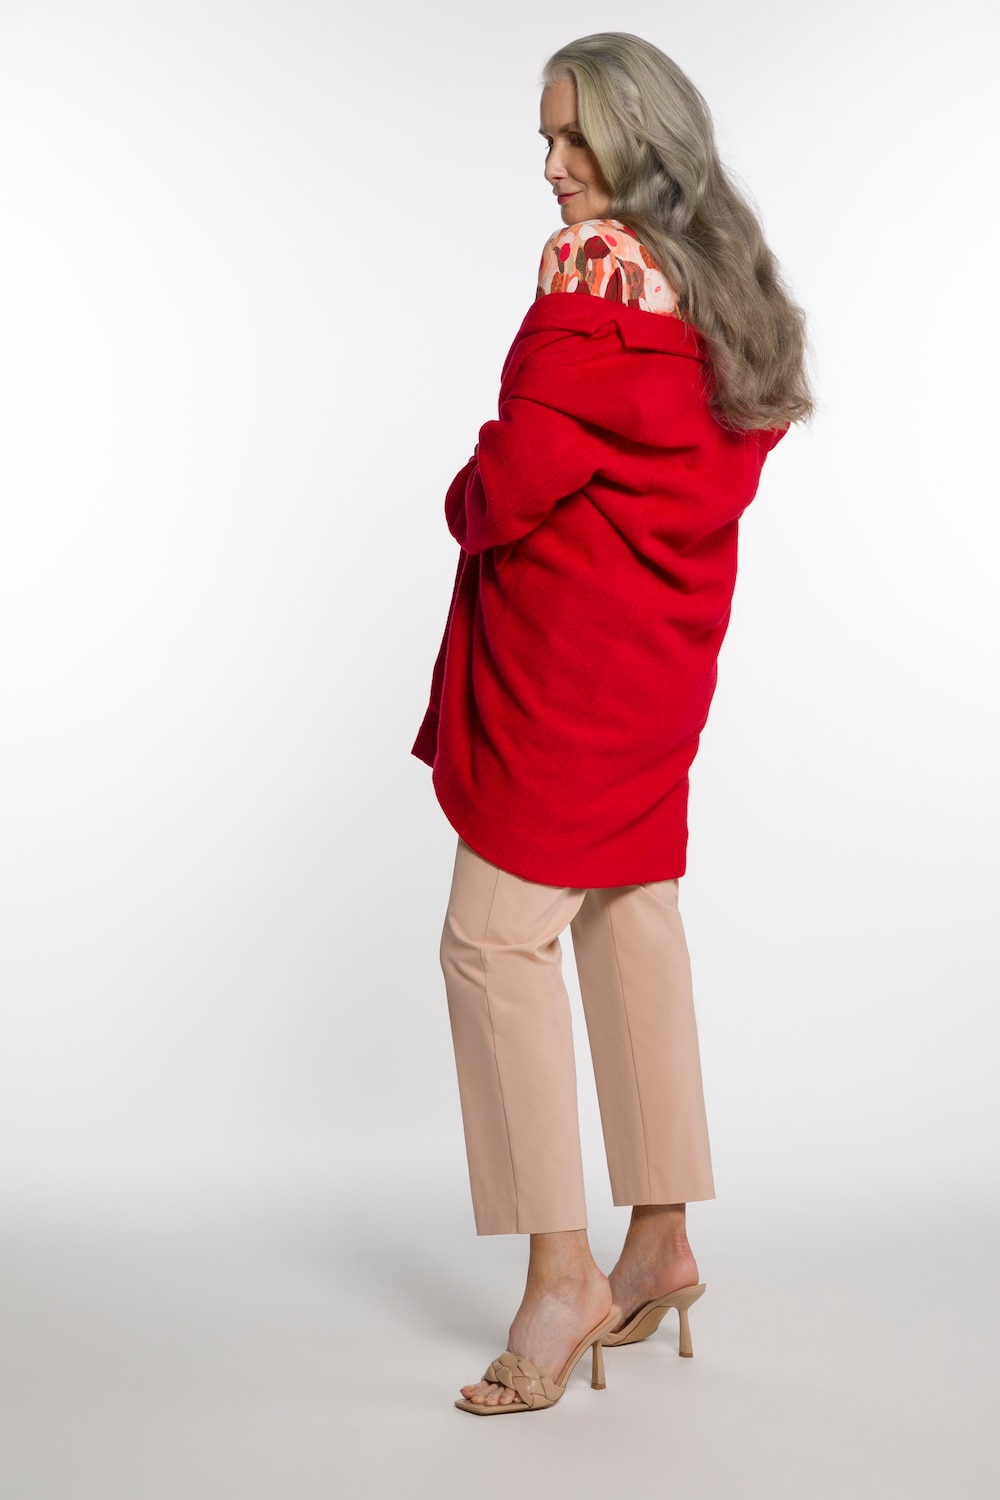 Große Größen Mantel, Damen, rot, Größe: 54, Polyester/Viskose/Wolle, Ulla Popken von Ulla Popken